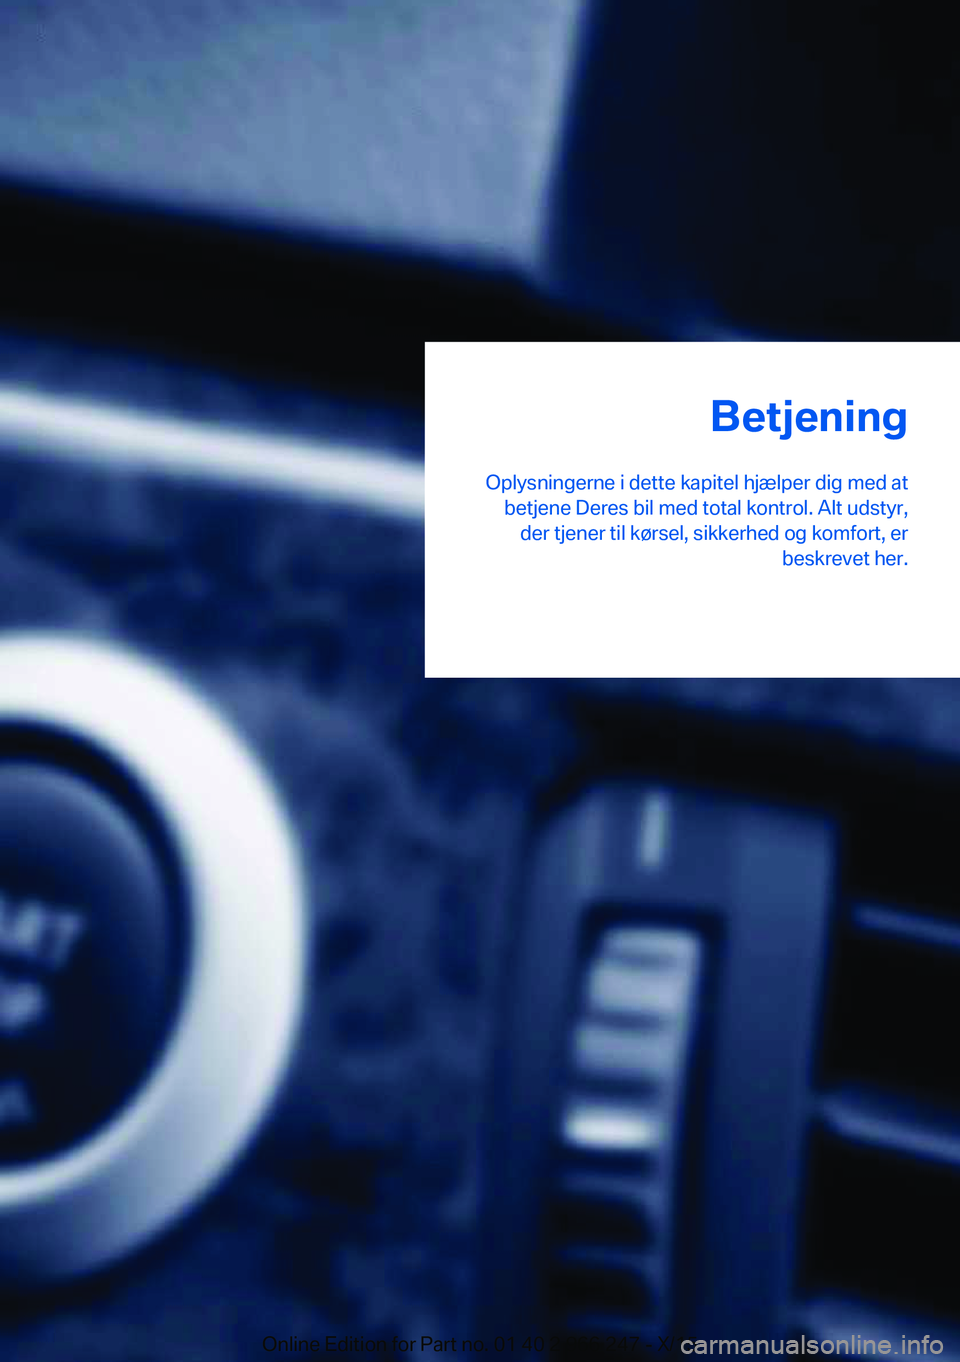 BMW 4 SERIES GRAN COUPE 2016  InstruktionsbØger (in Danish) Betjening
Oplysningerne i dette kapitel hjælper dig med at betjene Deres bil med total kontrol. Alt udstyr,der tjener til kørsel, sikkerhed og komfort, er beskrevet her.Online Edition for Part no. 0